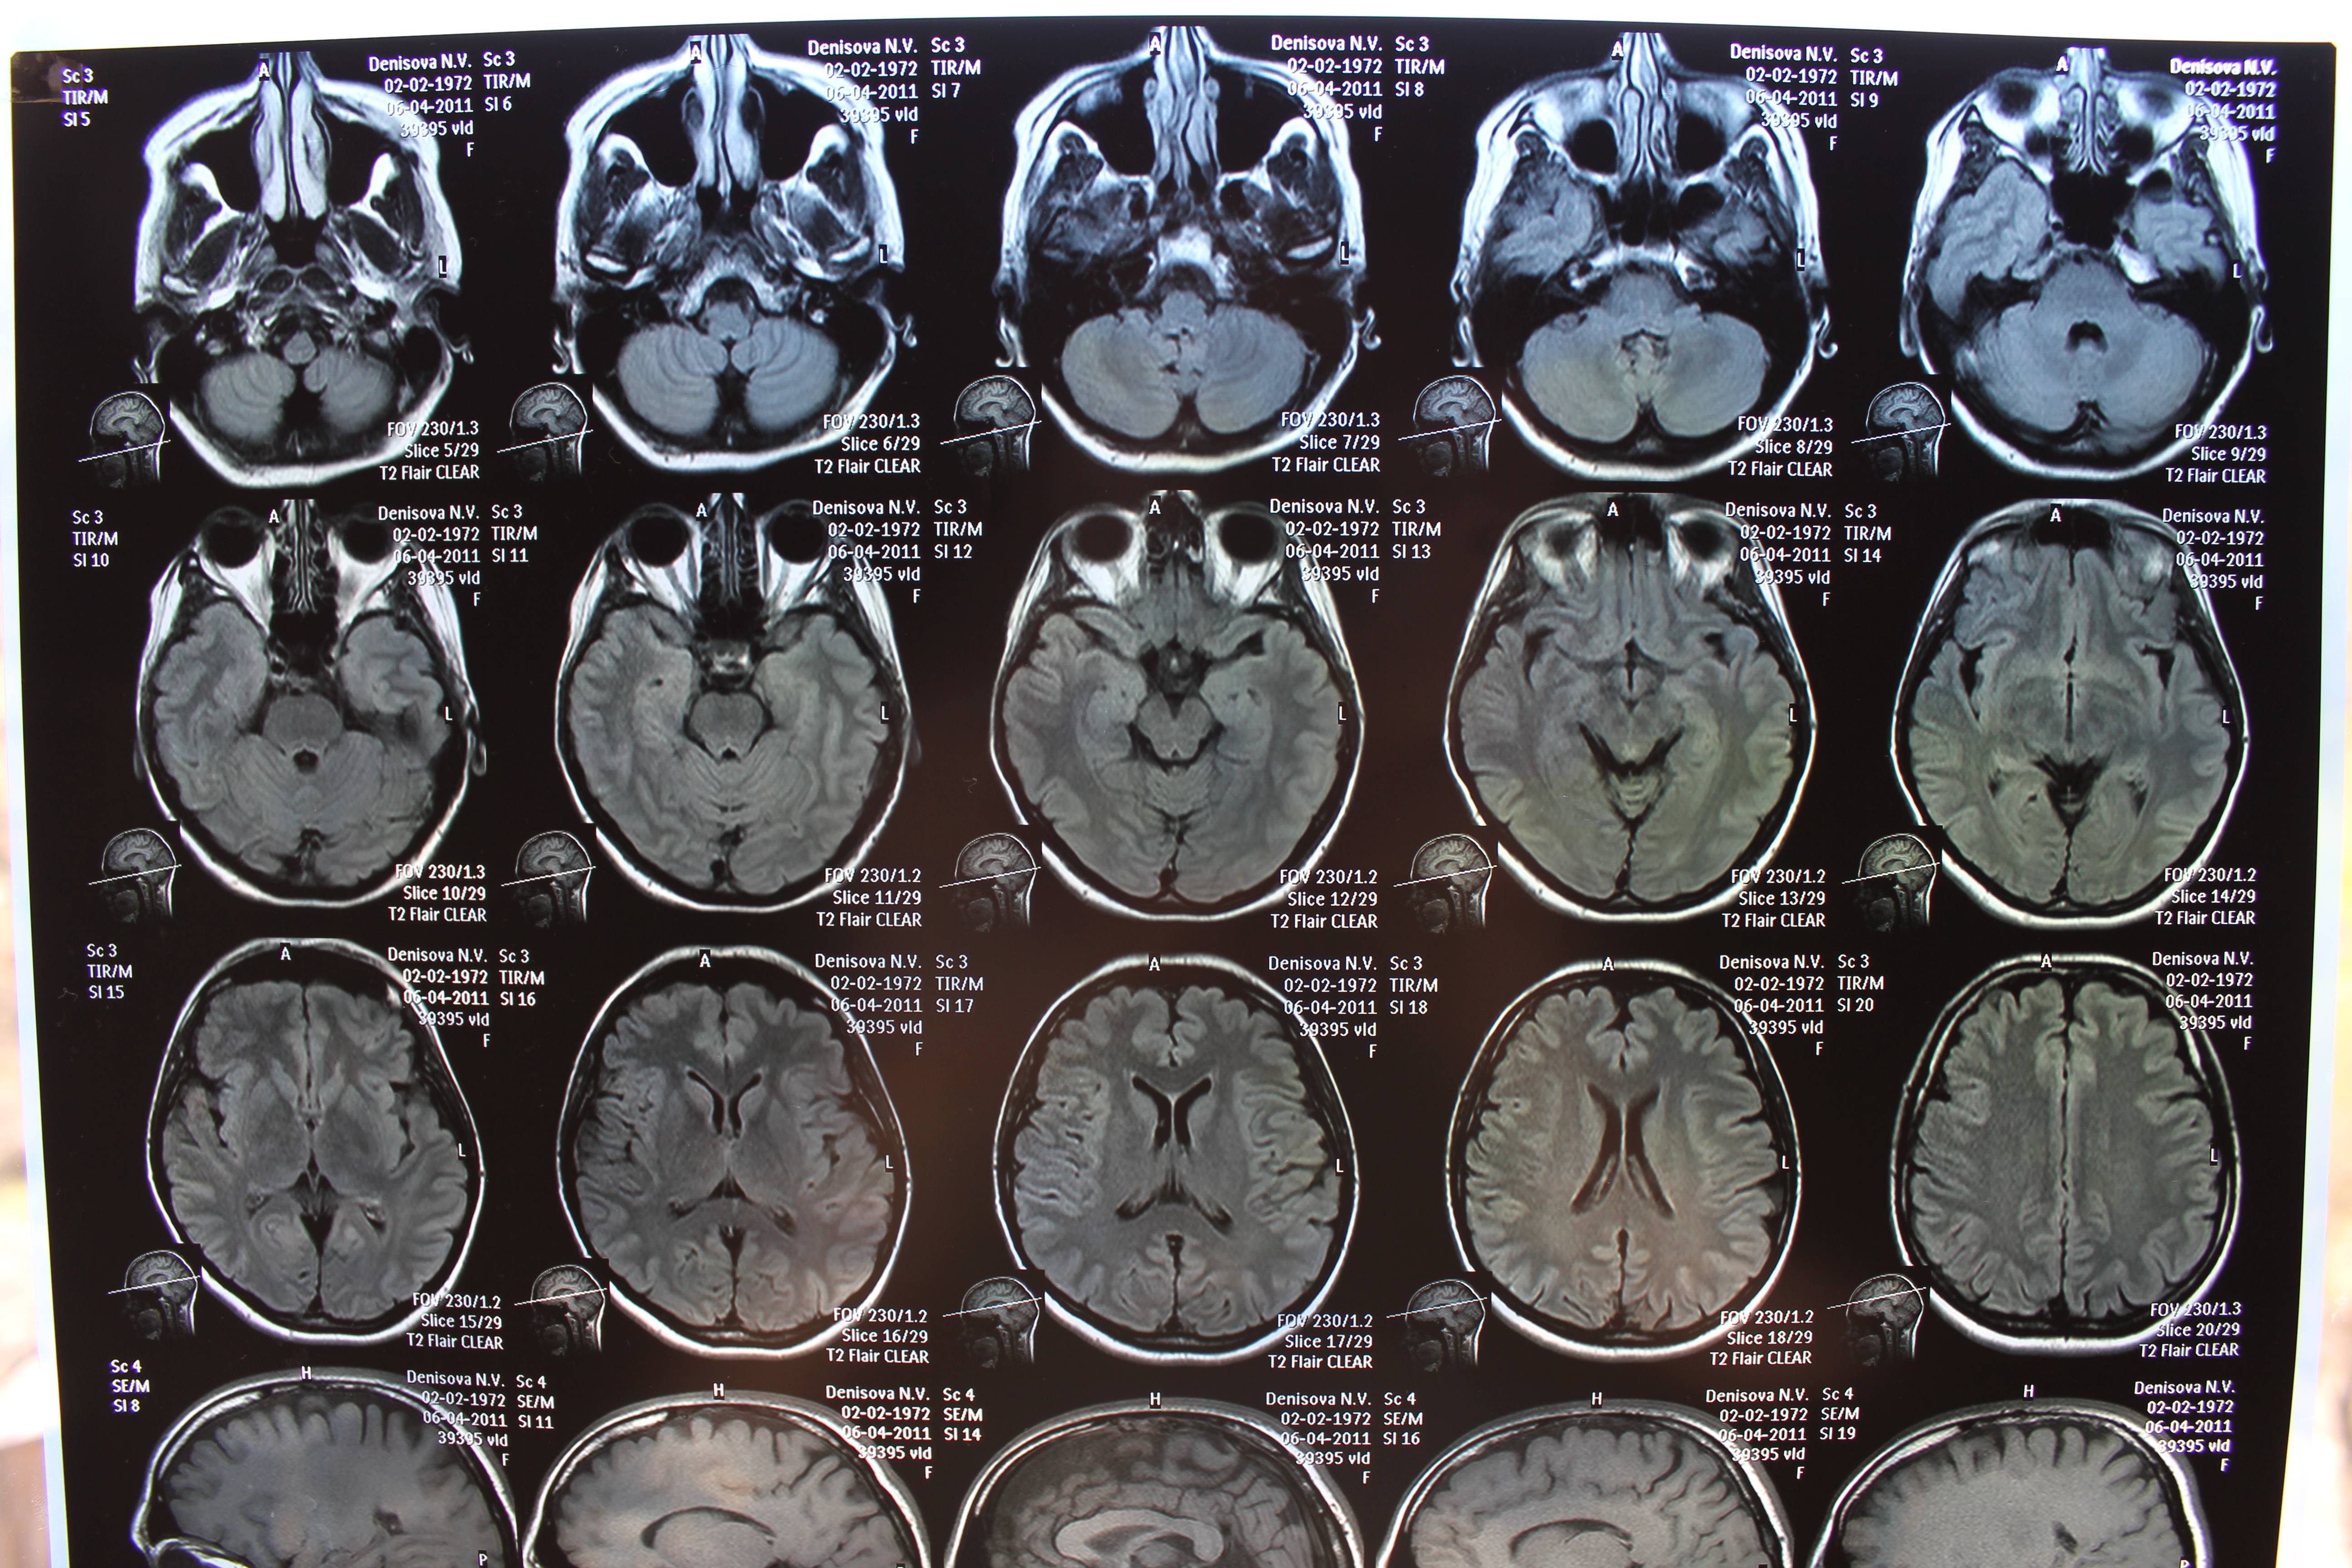 Патологии на мрт. Снимок мрт мозга здорового человека. Снимки мрт головного мозга здорового человека. Компьютерная томография кт головного мозга. Мрт головного мозга человека в норме.